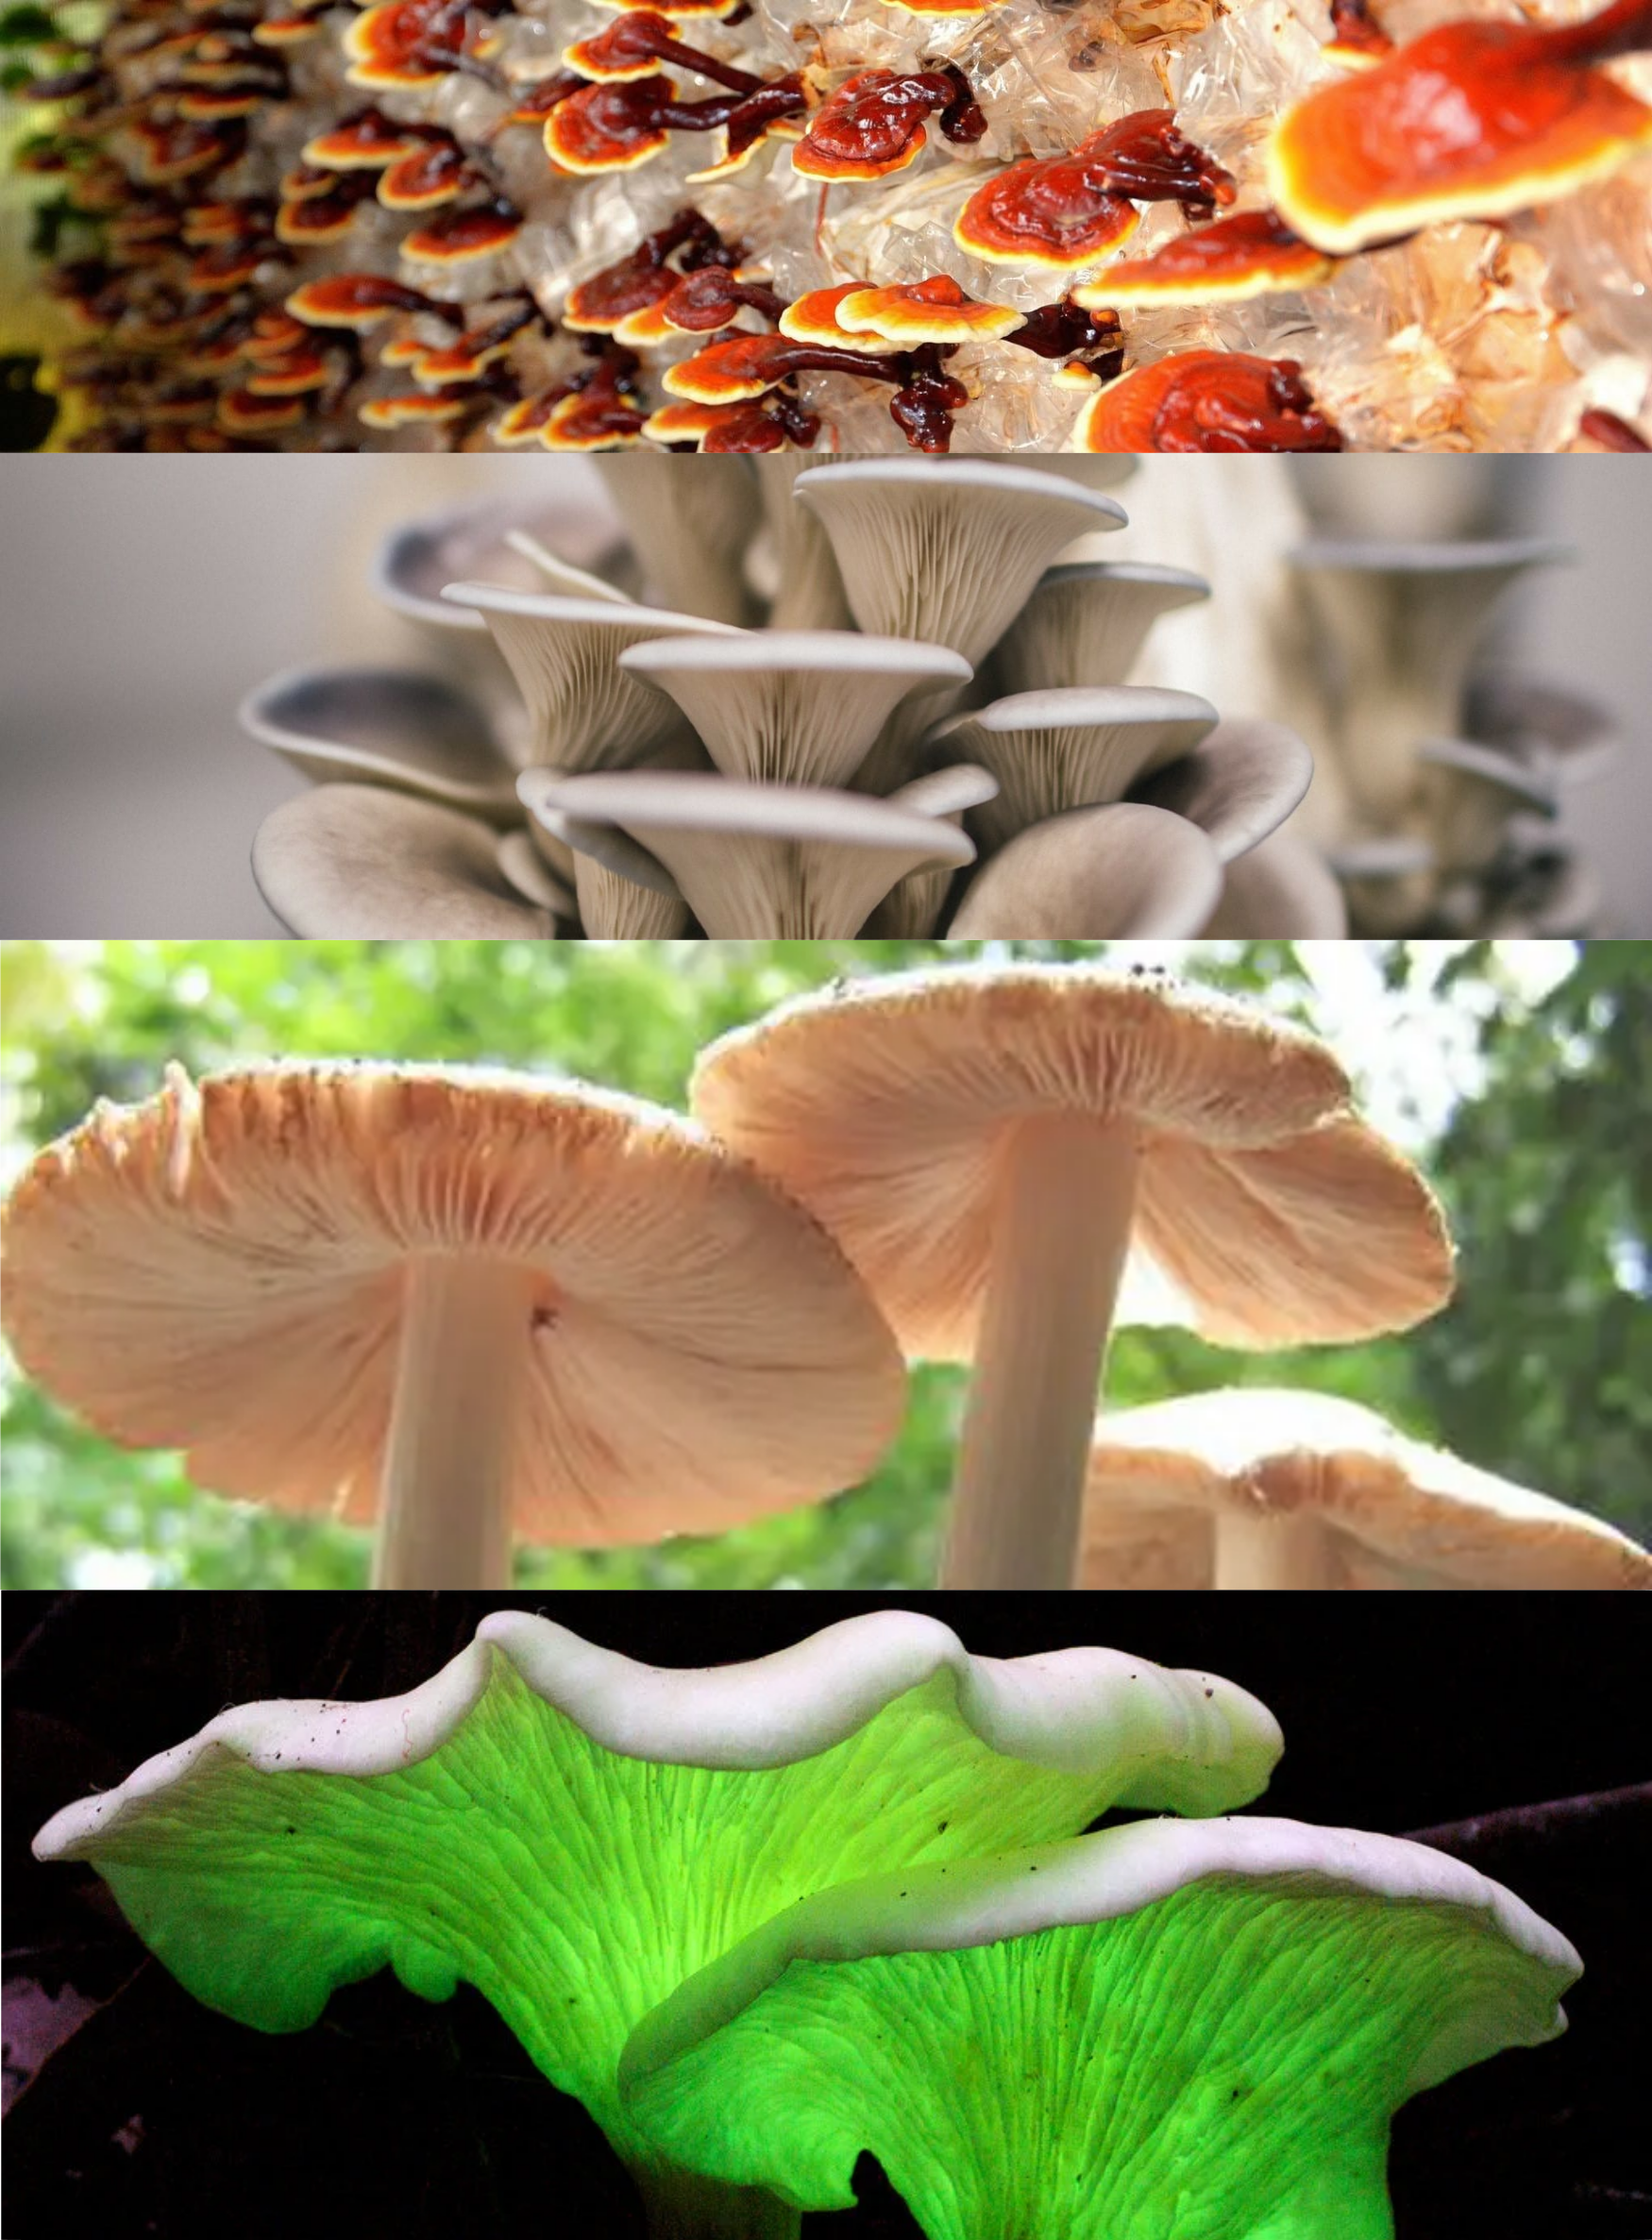 Fungi species